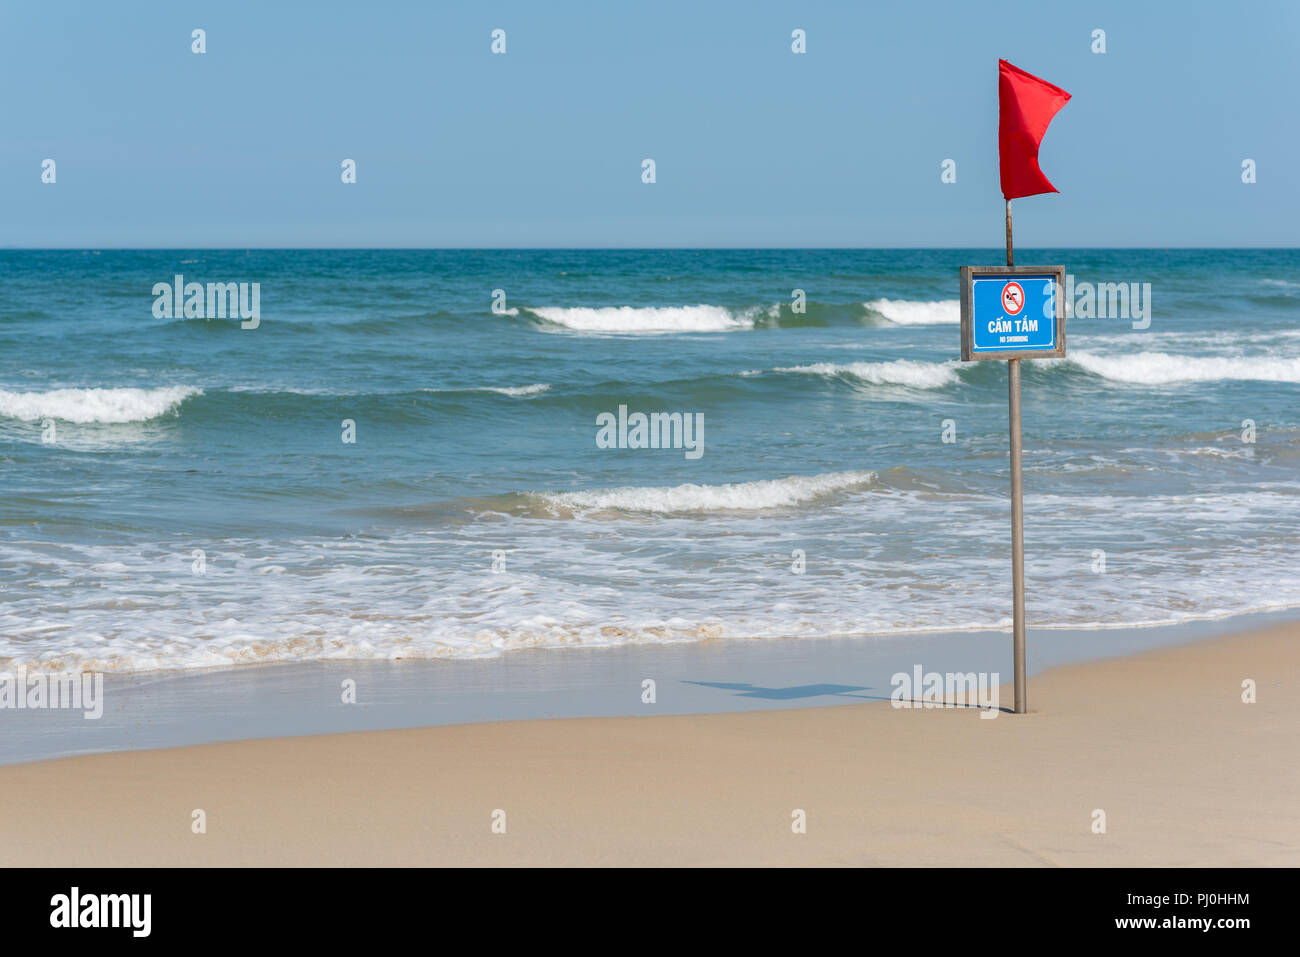 Bandiera rossa, il segno grafico e la scritta 'n' di nuoto in inglese e vietnamita sul mio Khe Beach (Da Nang, Vietnam) in maggio. Foto Stock